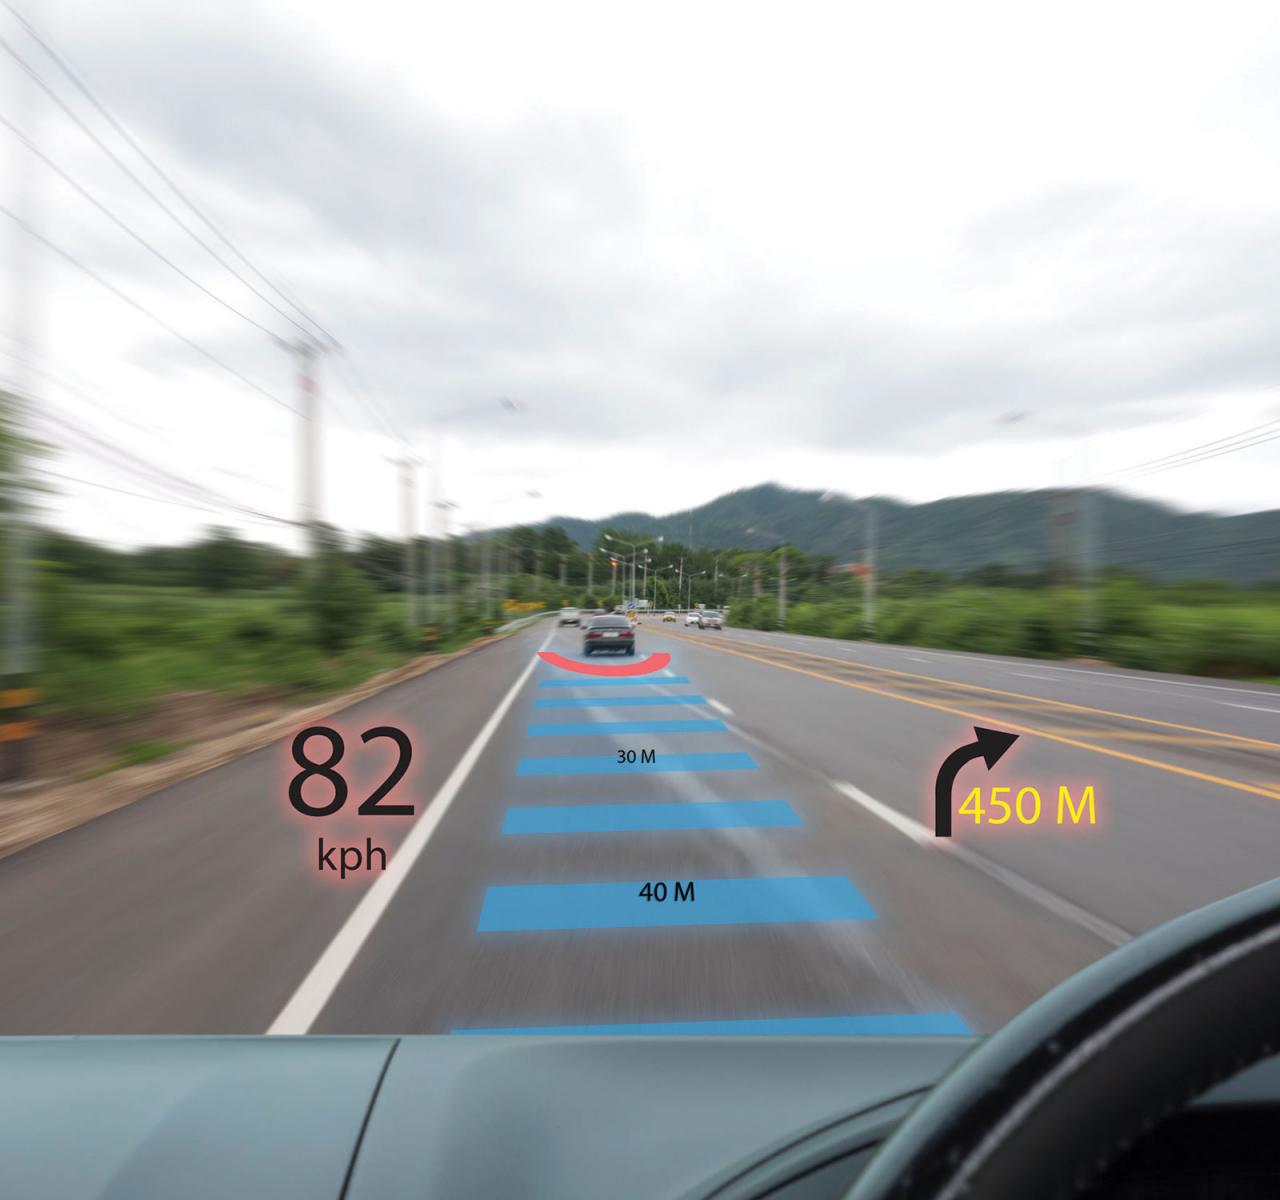 长期的前瞻性LIDAR对于能够部署自动车辆至关重要